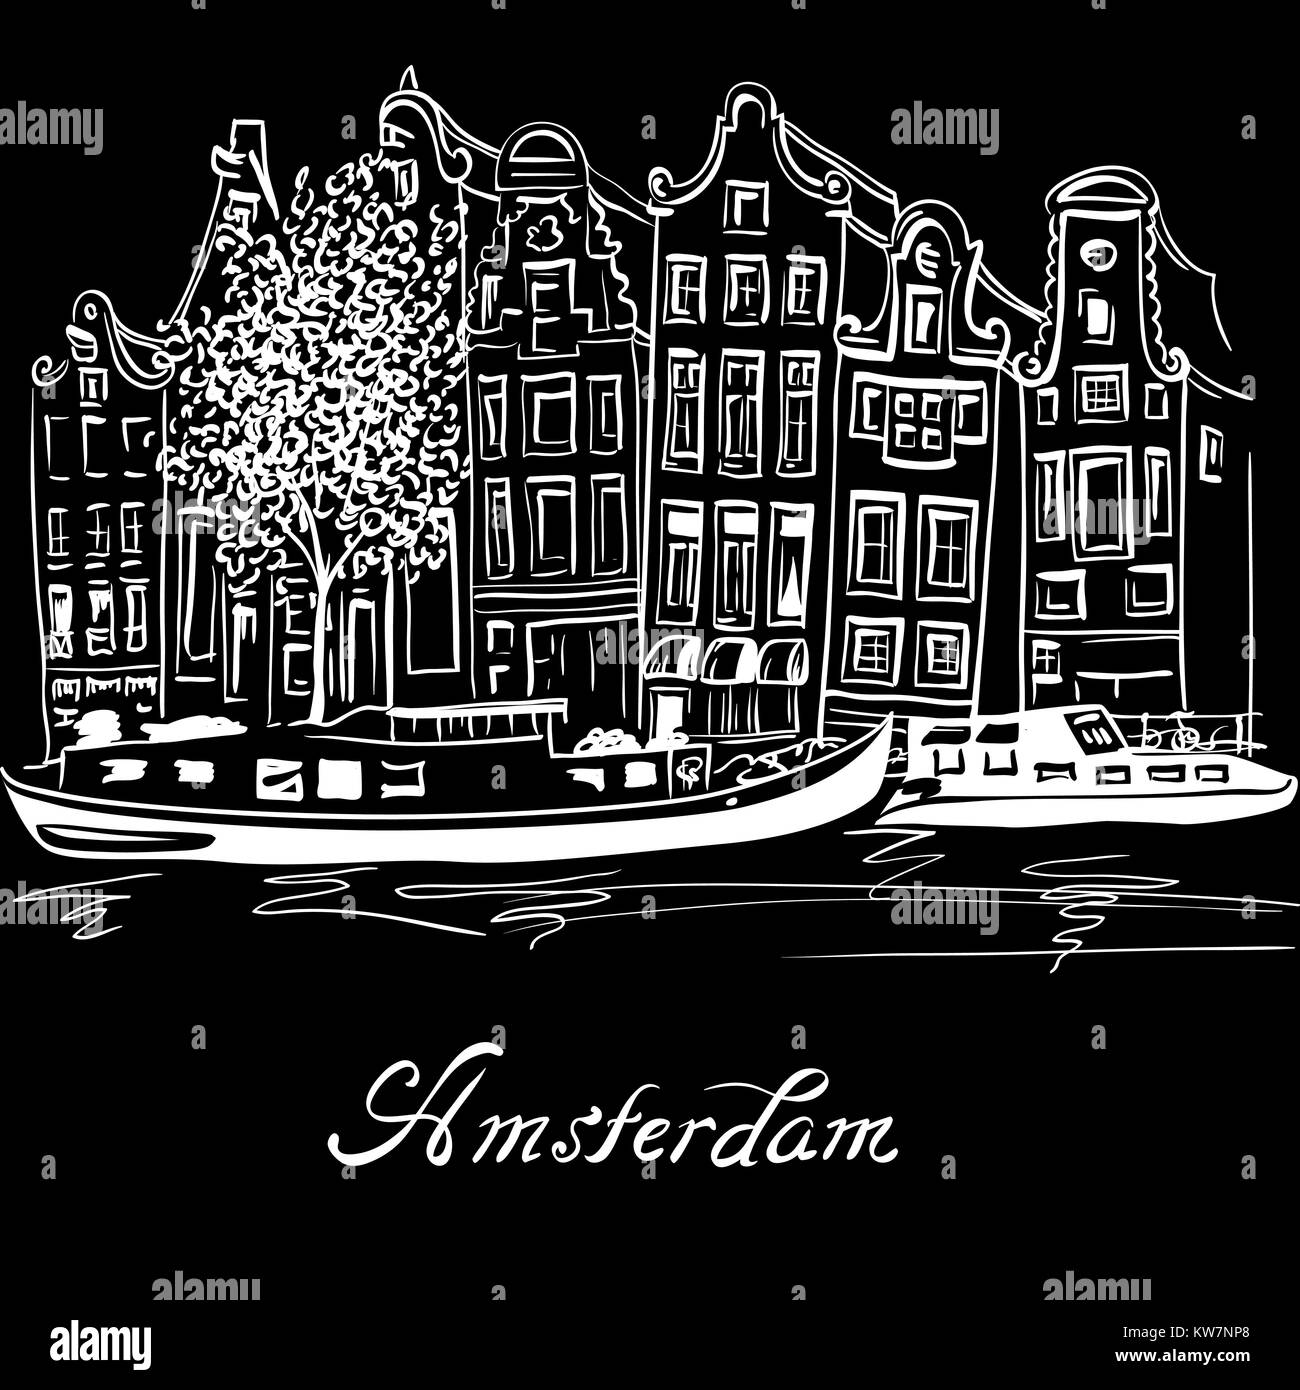 Vektor Amsterdam Canal und typisch holländischen Häuser Stock Vektor